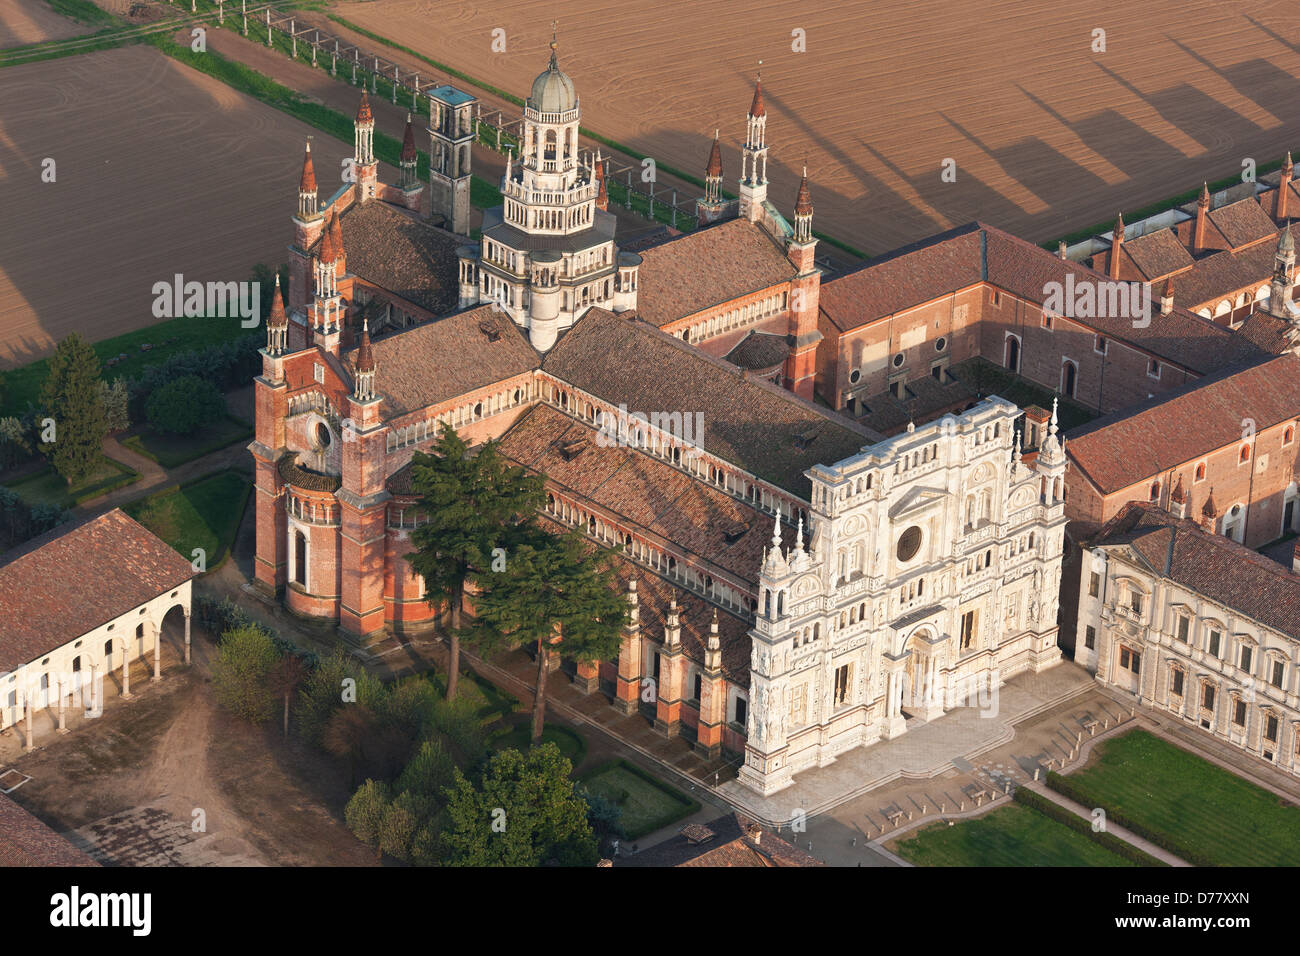 VISTA AEREA. Monastero certosino a sud di Milano, in Valle del po. Certosa di Pavia, Provincia di Pavia, Lombardia, Italia. Foto Stock